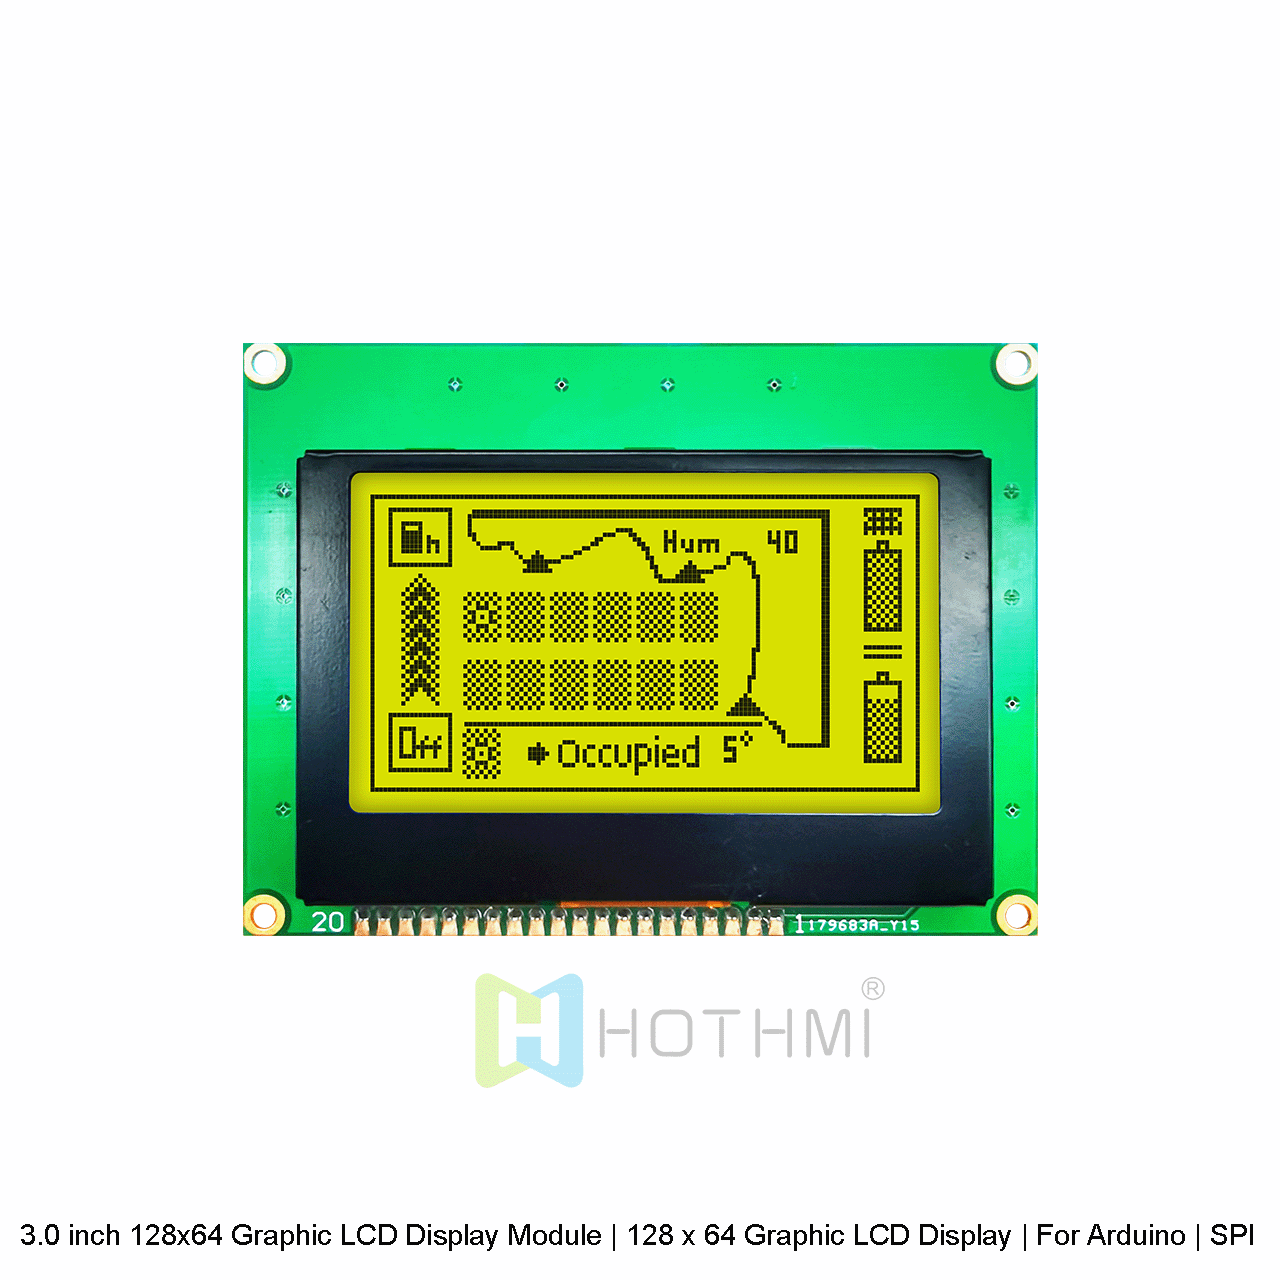 3.0英寸 128x64 图形 LCD 显示模块 |128 x 64图形液晶显示屏| 适用于 Arduino  | SPI接口